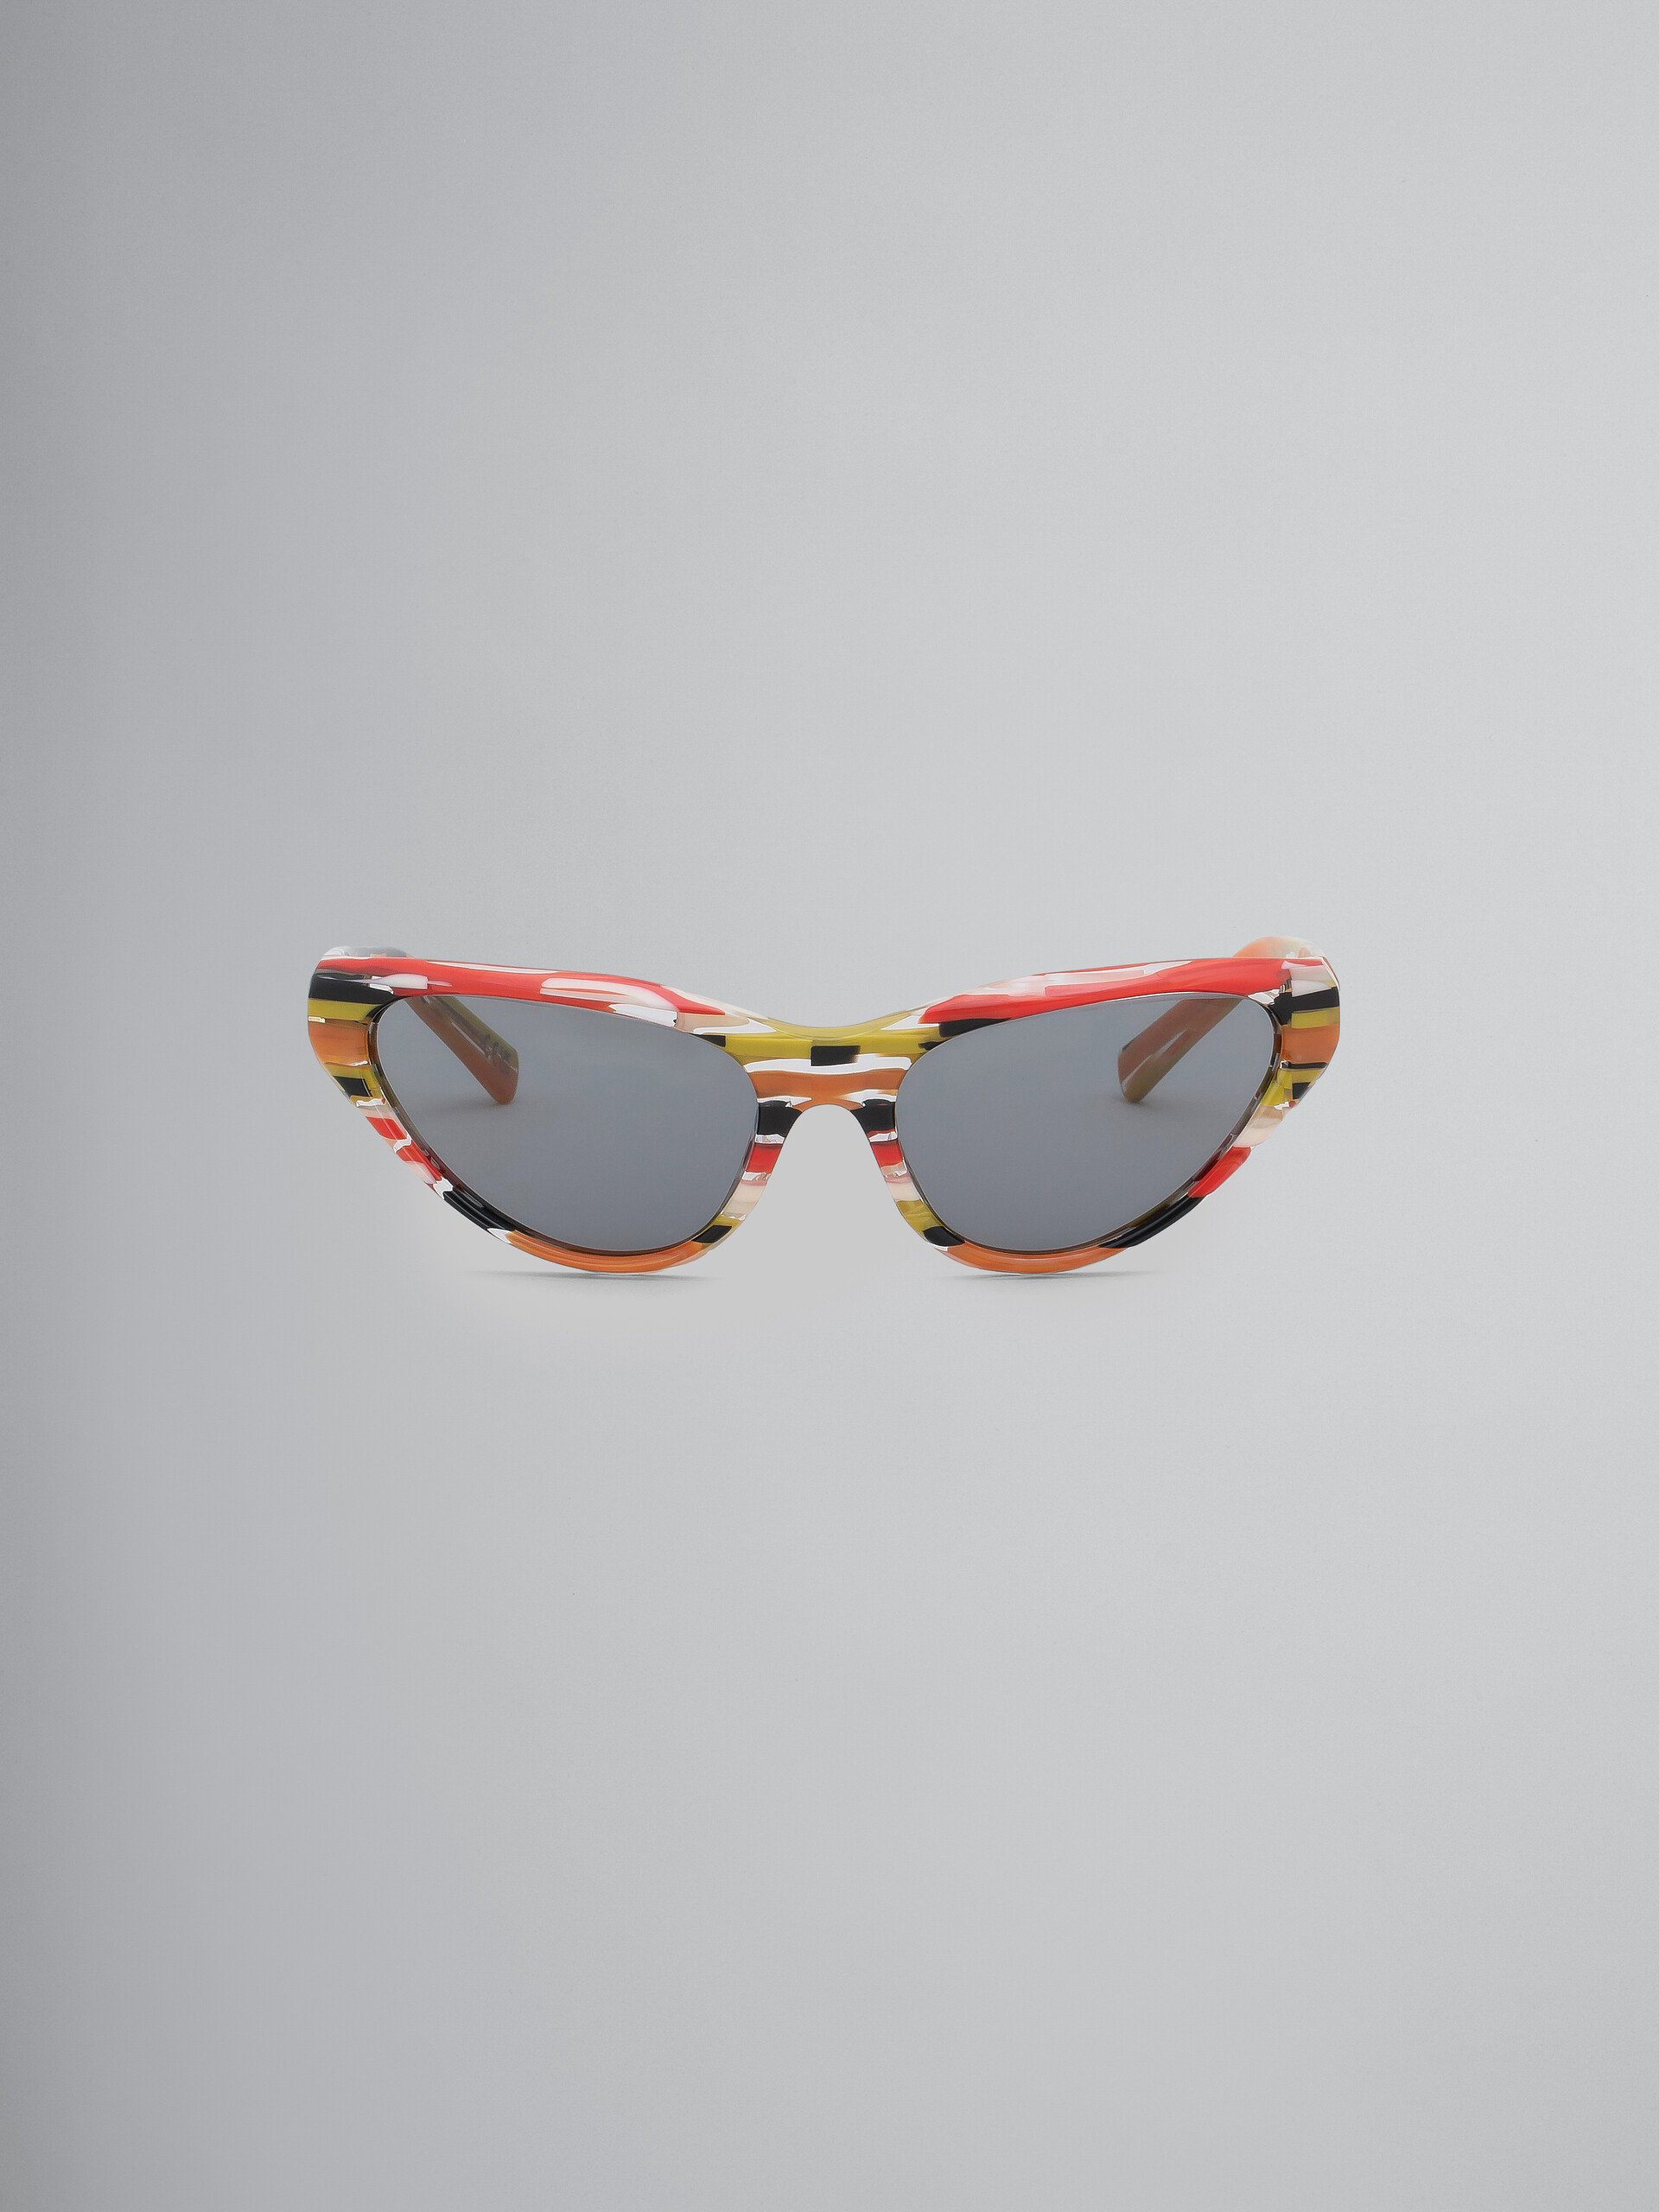 Sonnenbrille Mavericks in Starshell - Optisch - Image 1